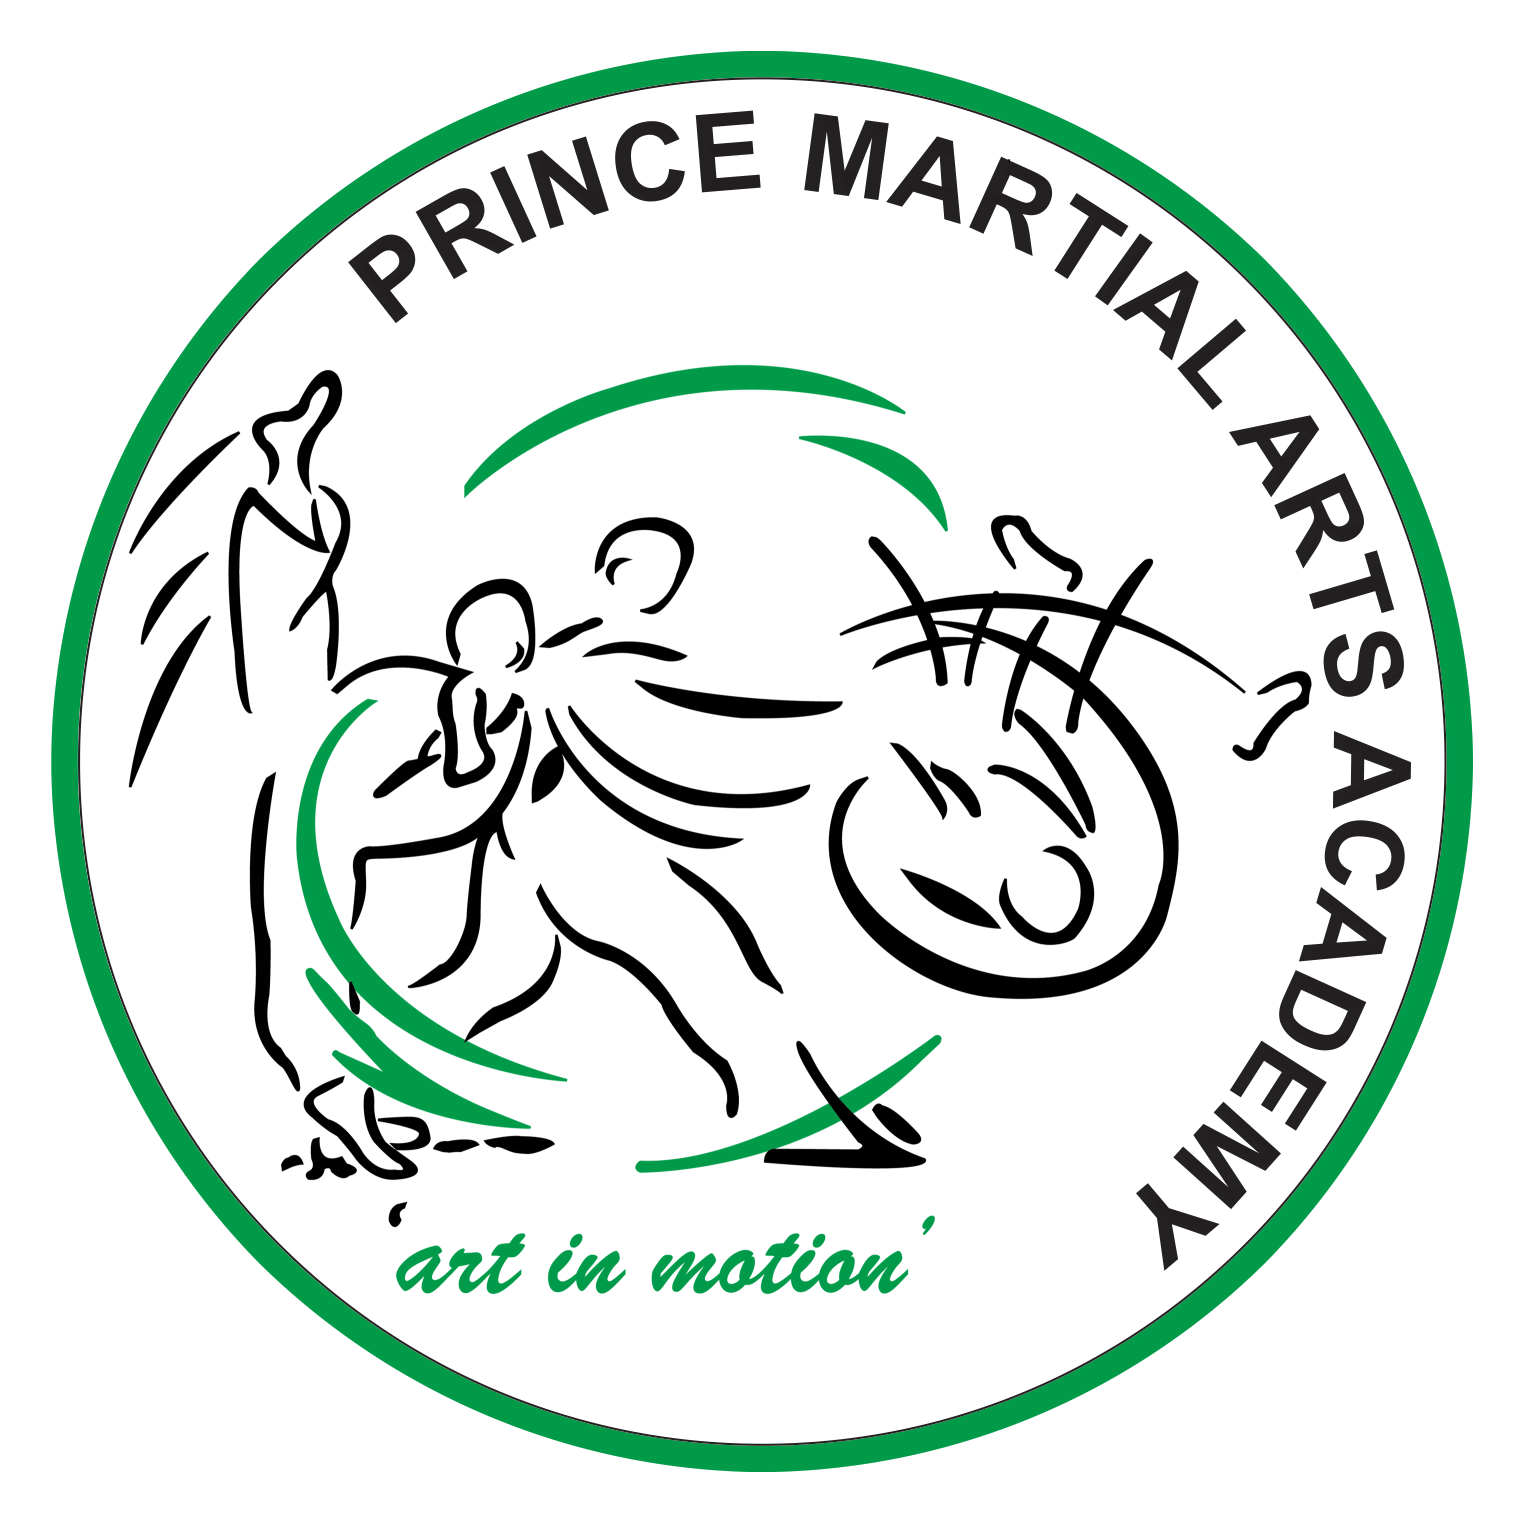 Prince Martial Arts Academy